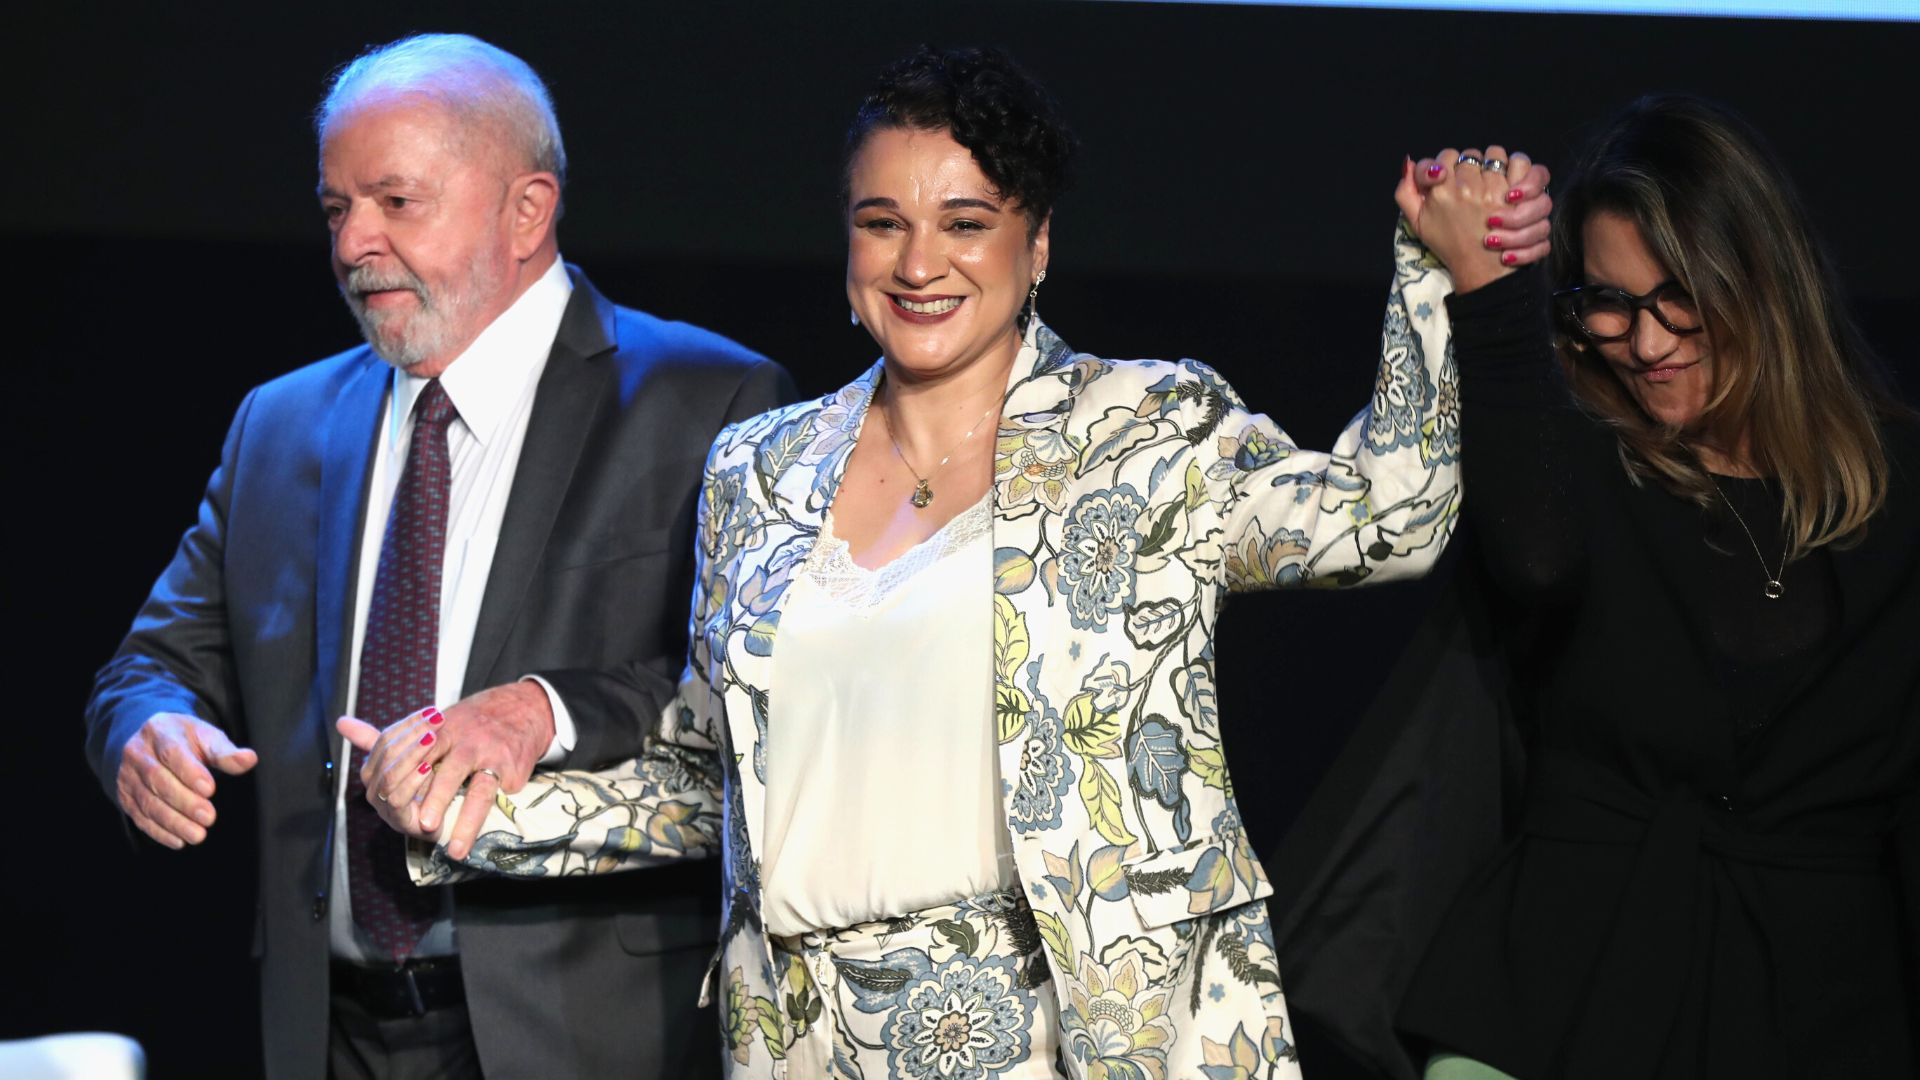 Presidente Lula, Tarciana Medeiros e Janja na posse da nova presidenta - Foto: Wilton Junior/Estadão Conteúdo